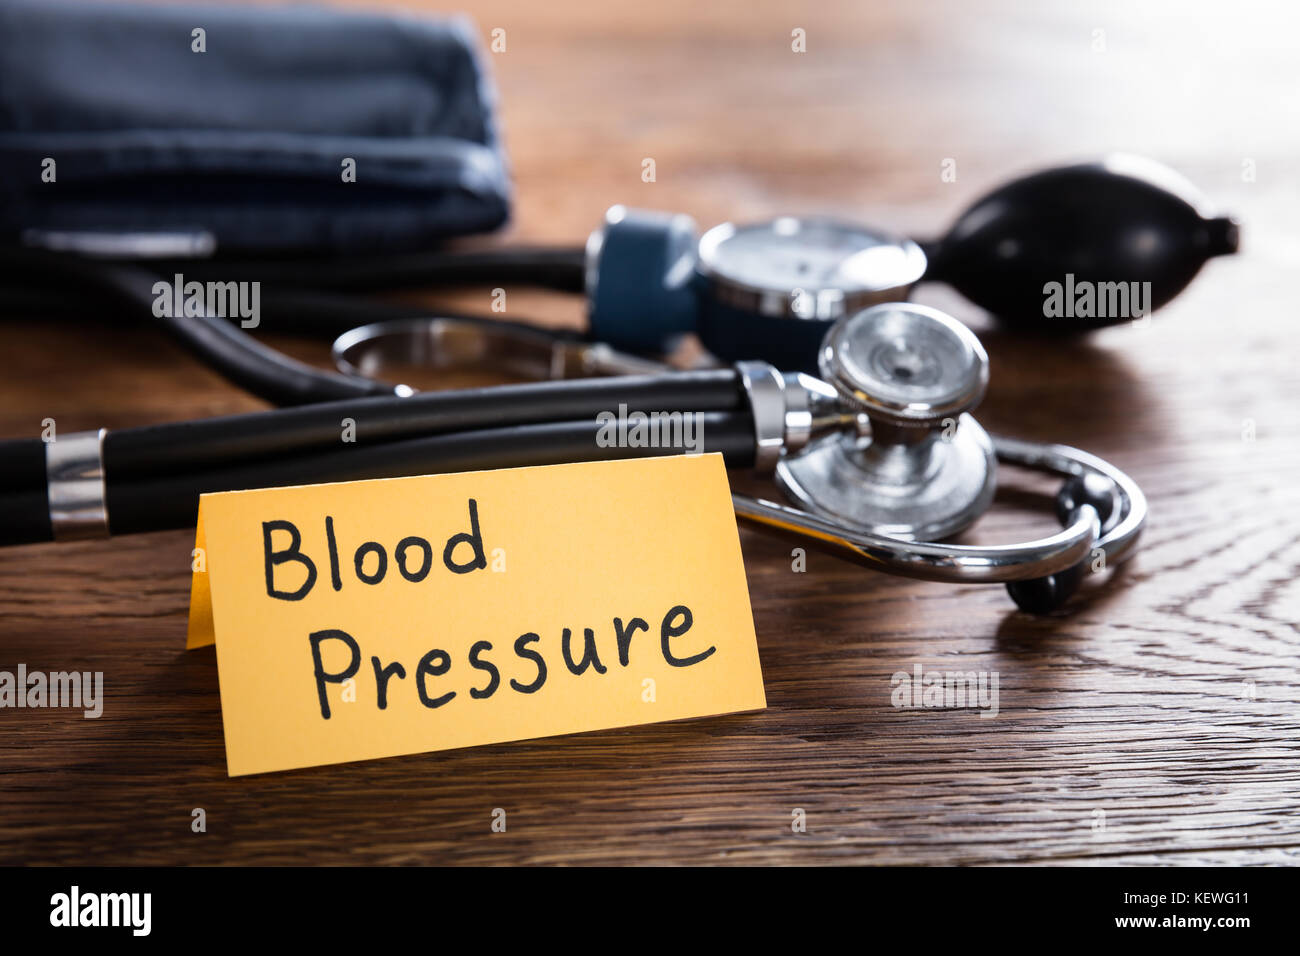 Uno sfigmomanometro e stetoscopio con la pressione sanguigna concetto sulla scrivania in legno Foto Stock